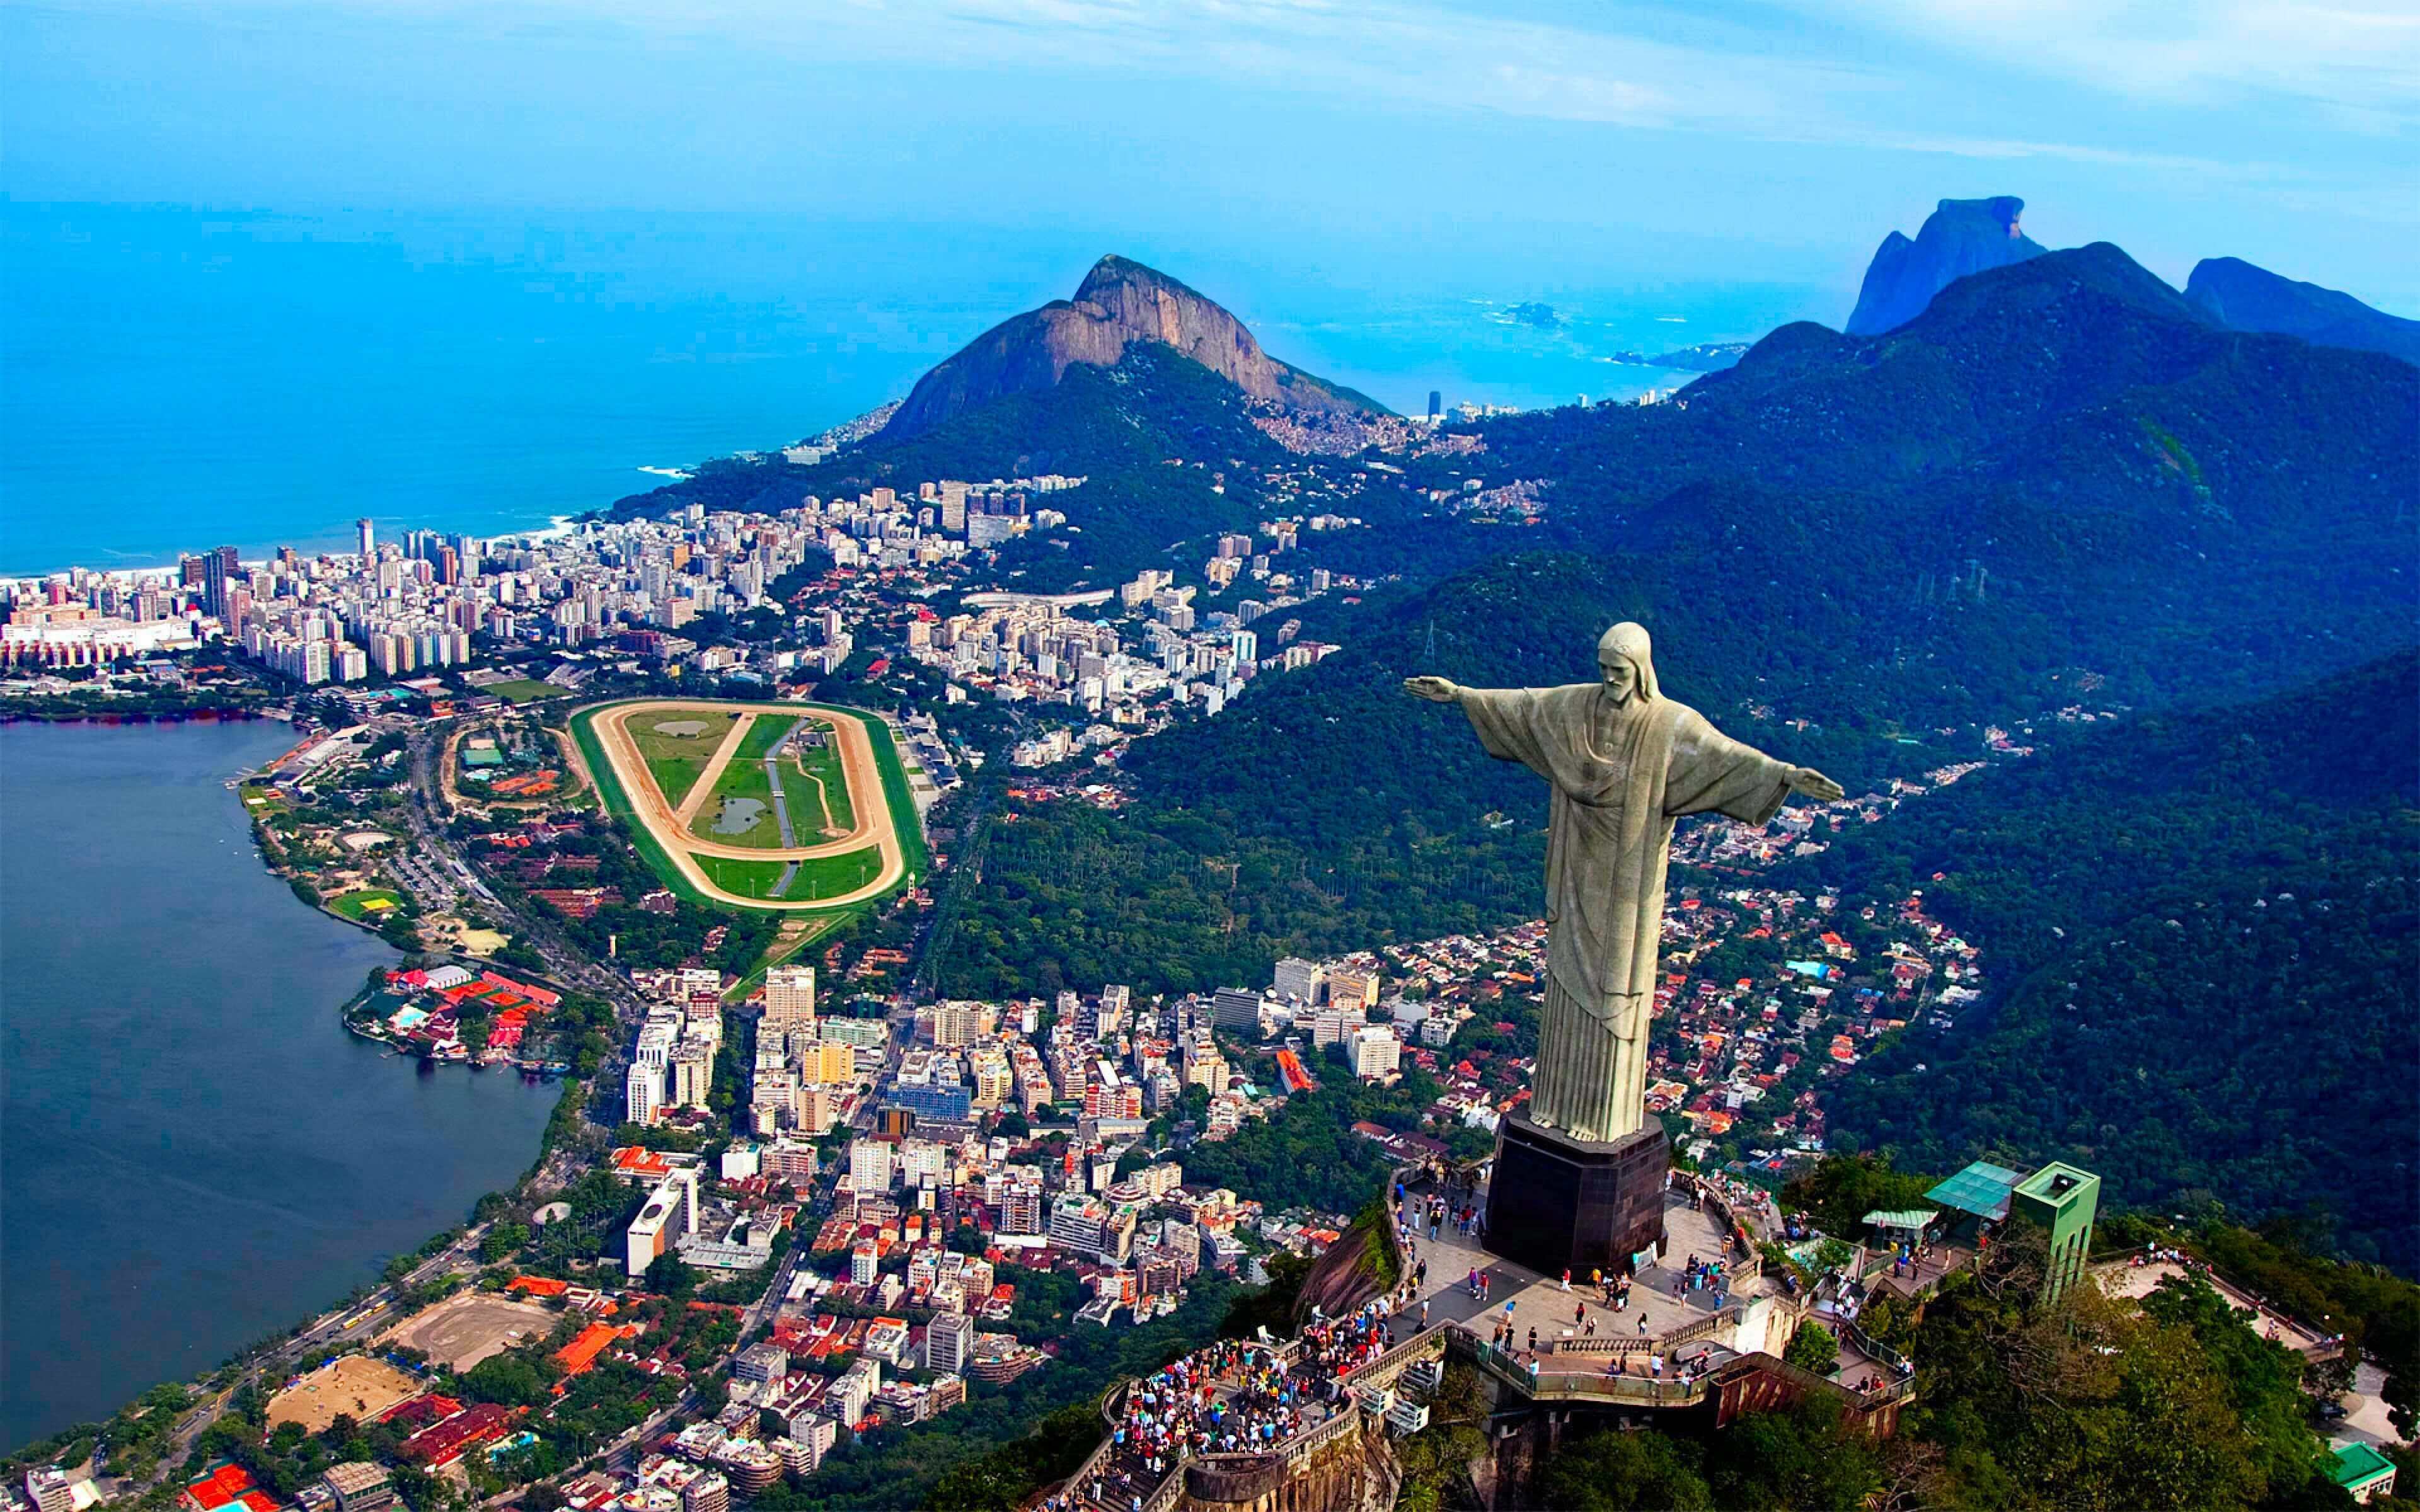 Brezilya'nın gidilebilecek muhteşem yerler